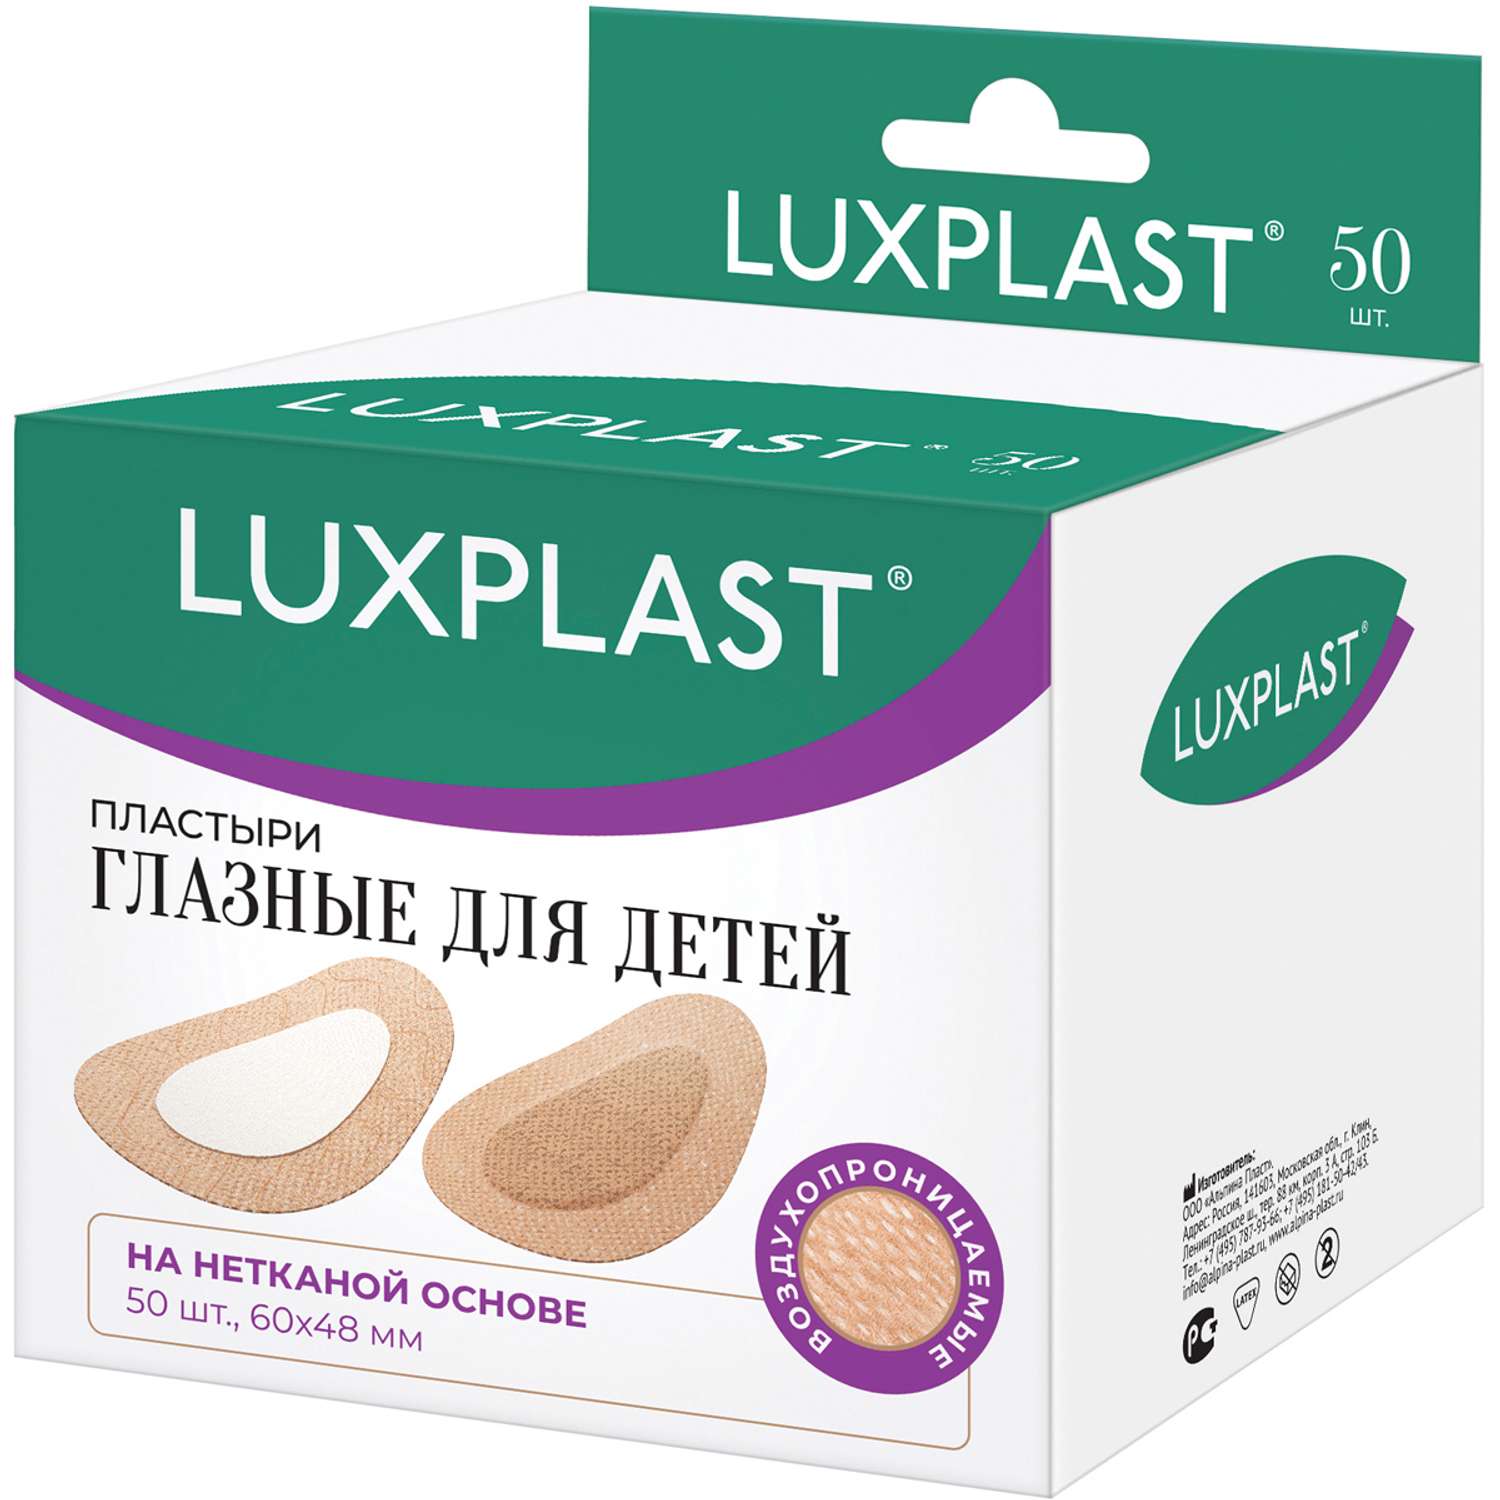 Пластыри глазные Luxplast для детей 50 шт - фото 1